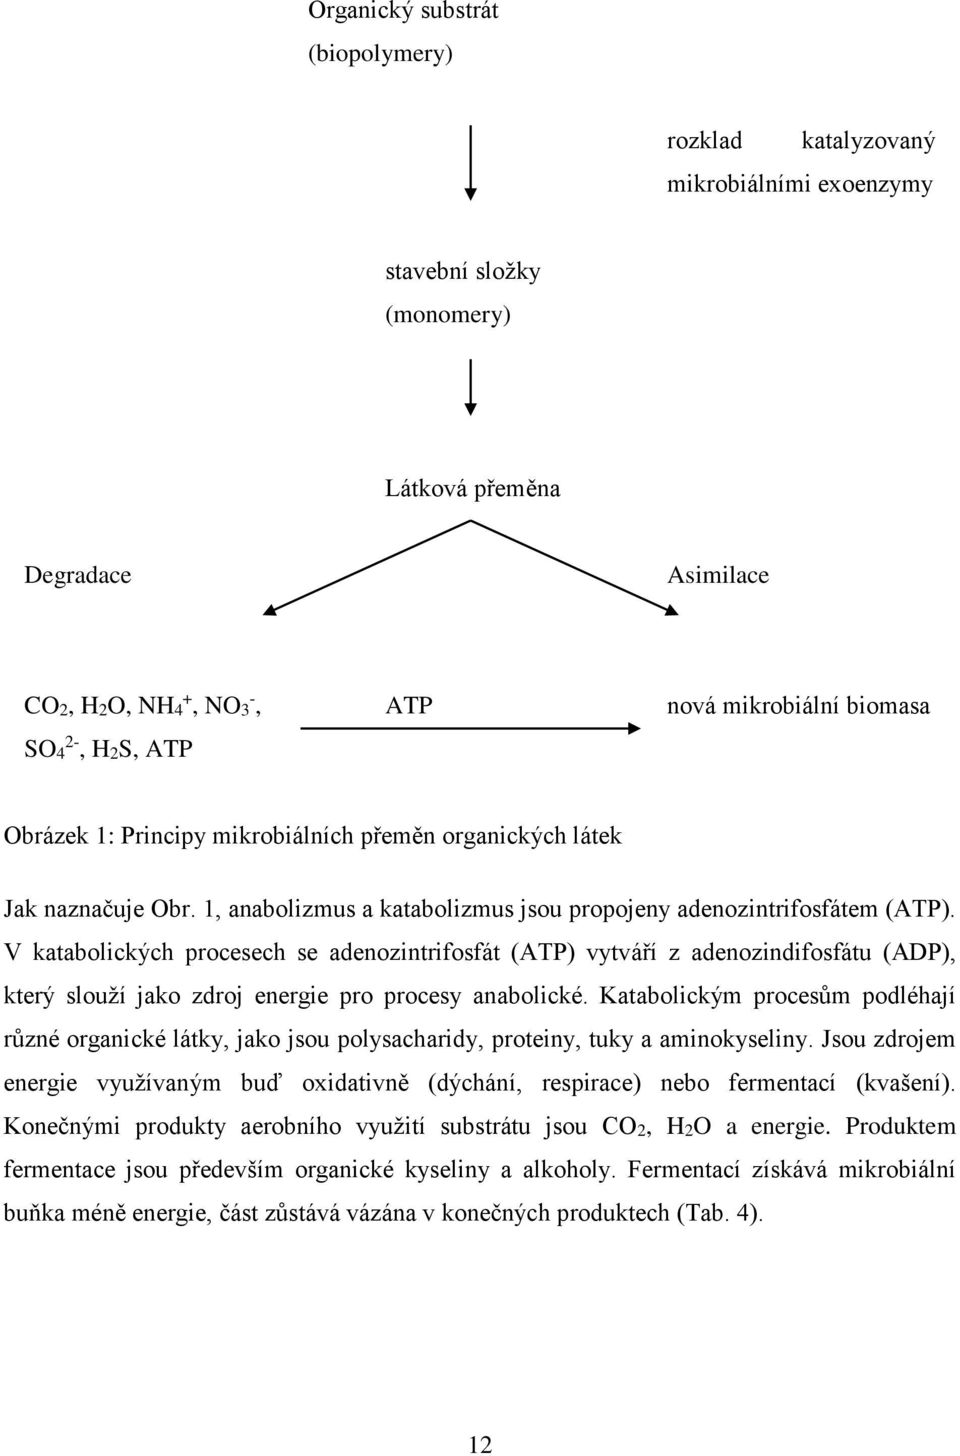 V katabolických procesech se adenozintrifosfát (ATP) vytváří z adenozindifosfátu (ADP), který slouží jako zdroj energie pro procesy anabolické.